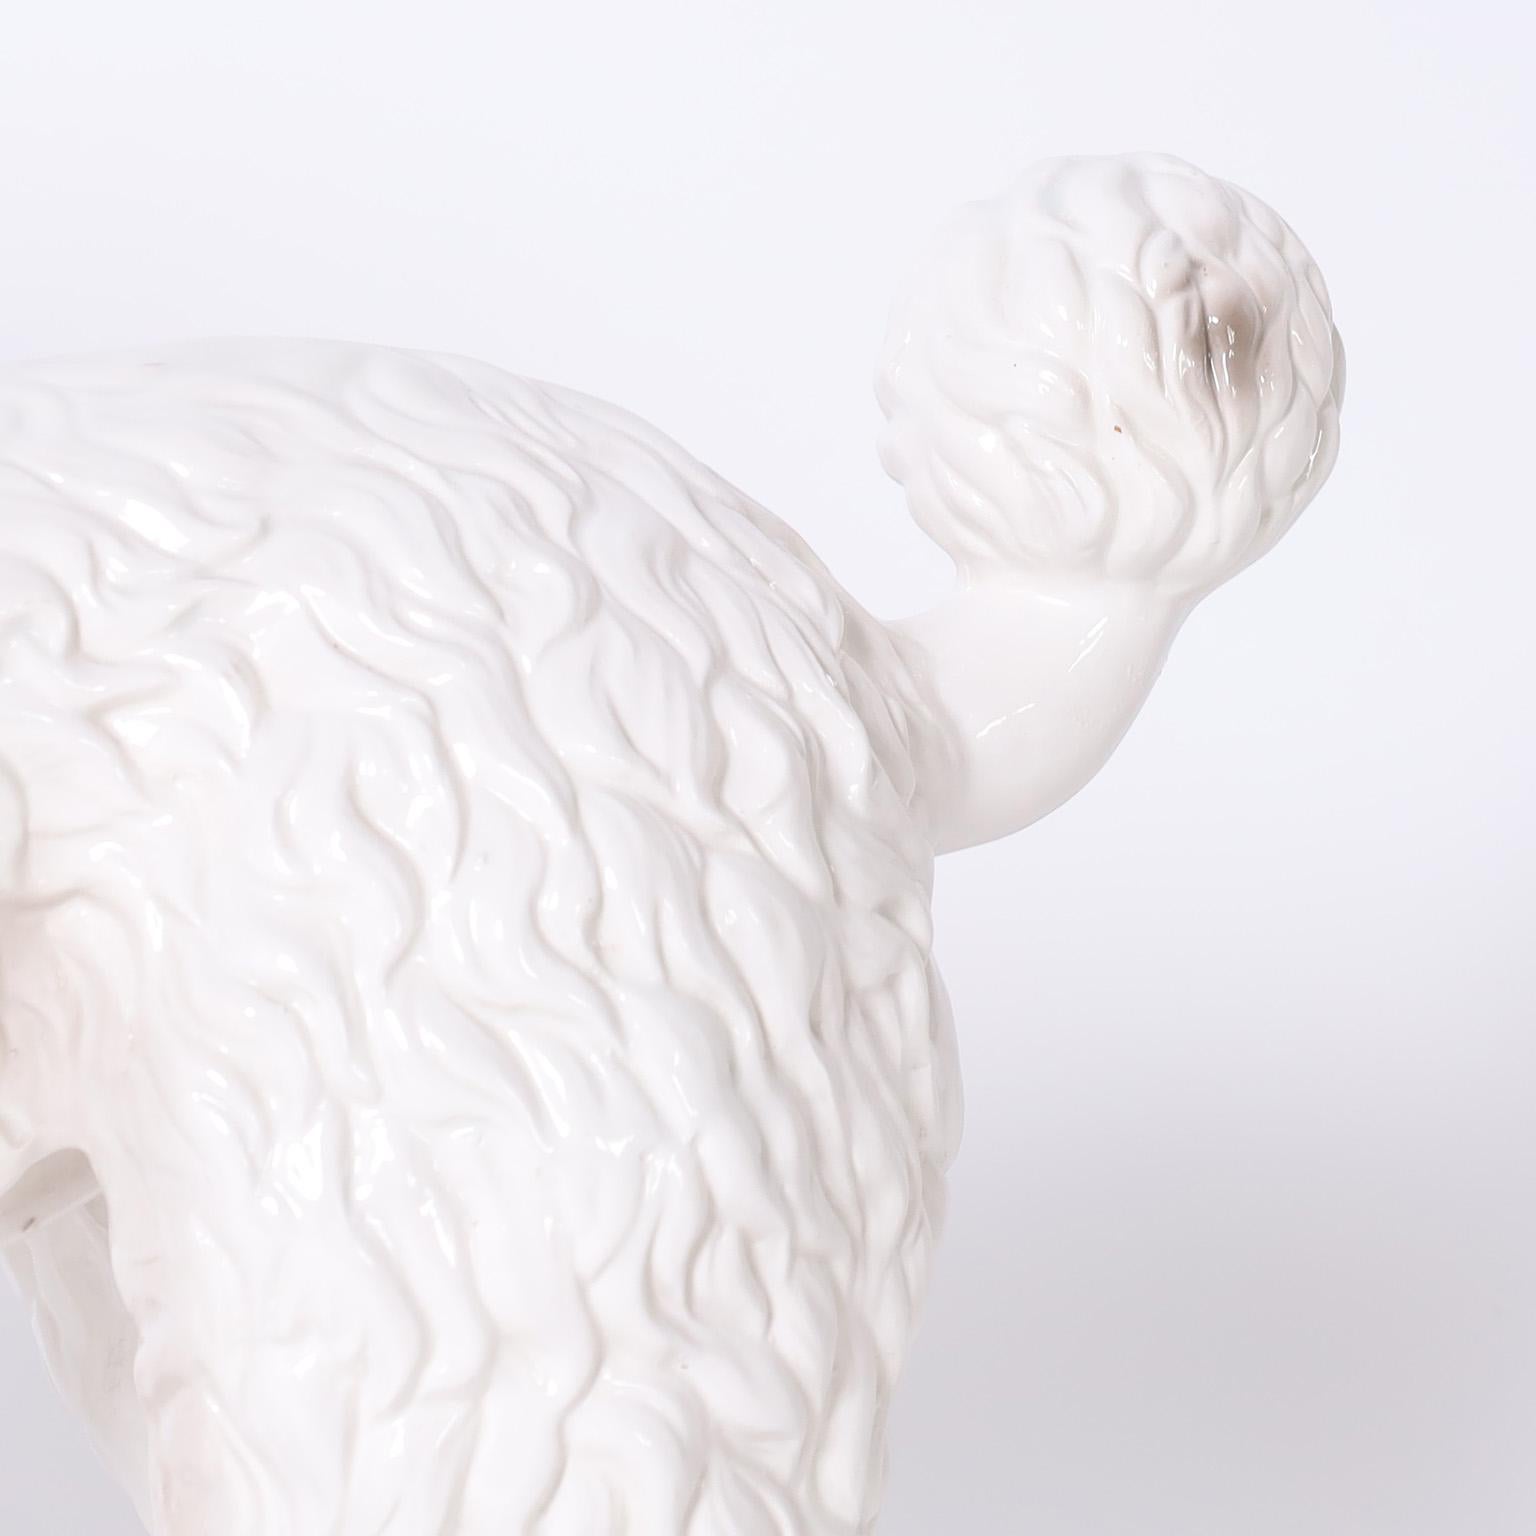 Italian Ceramic White Poodle 2